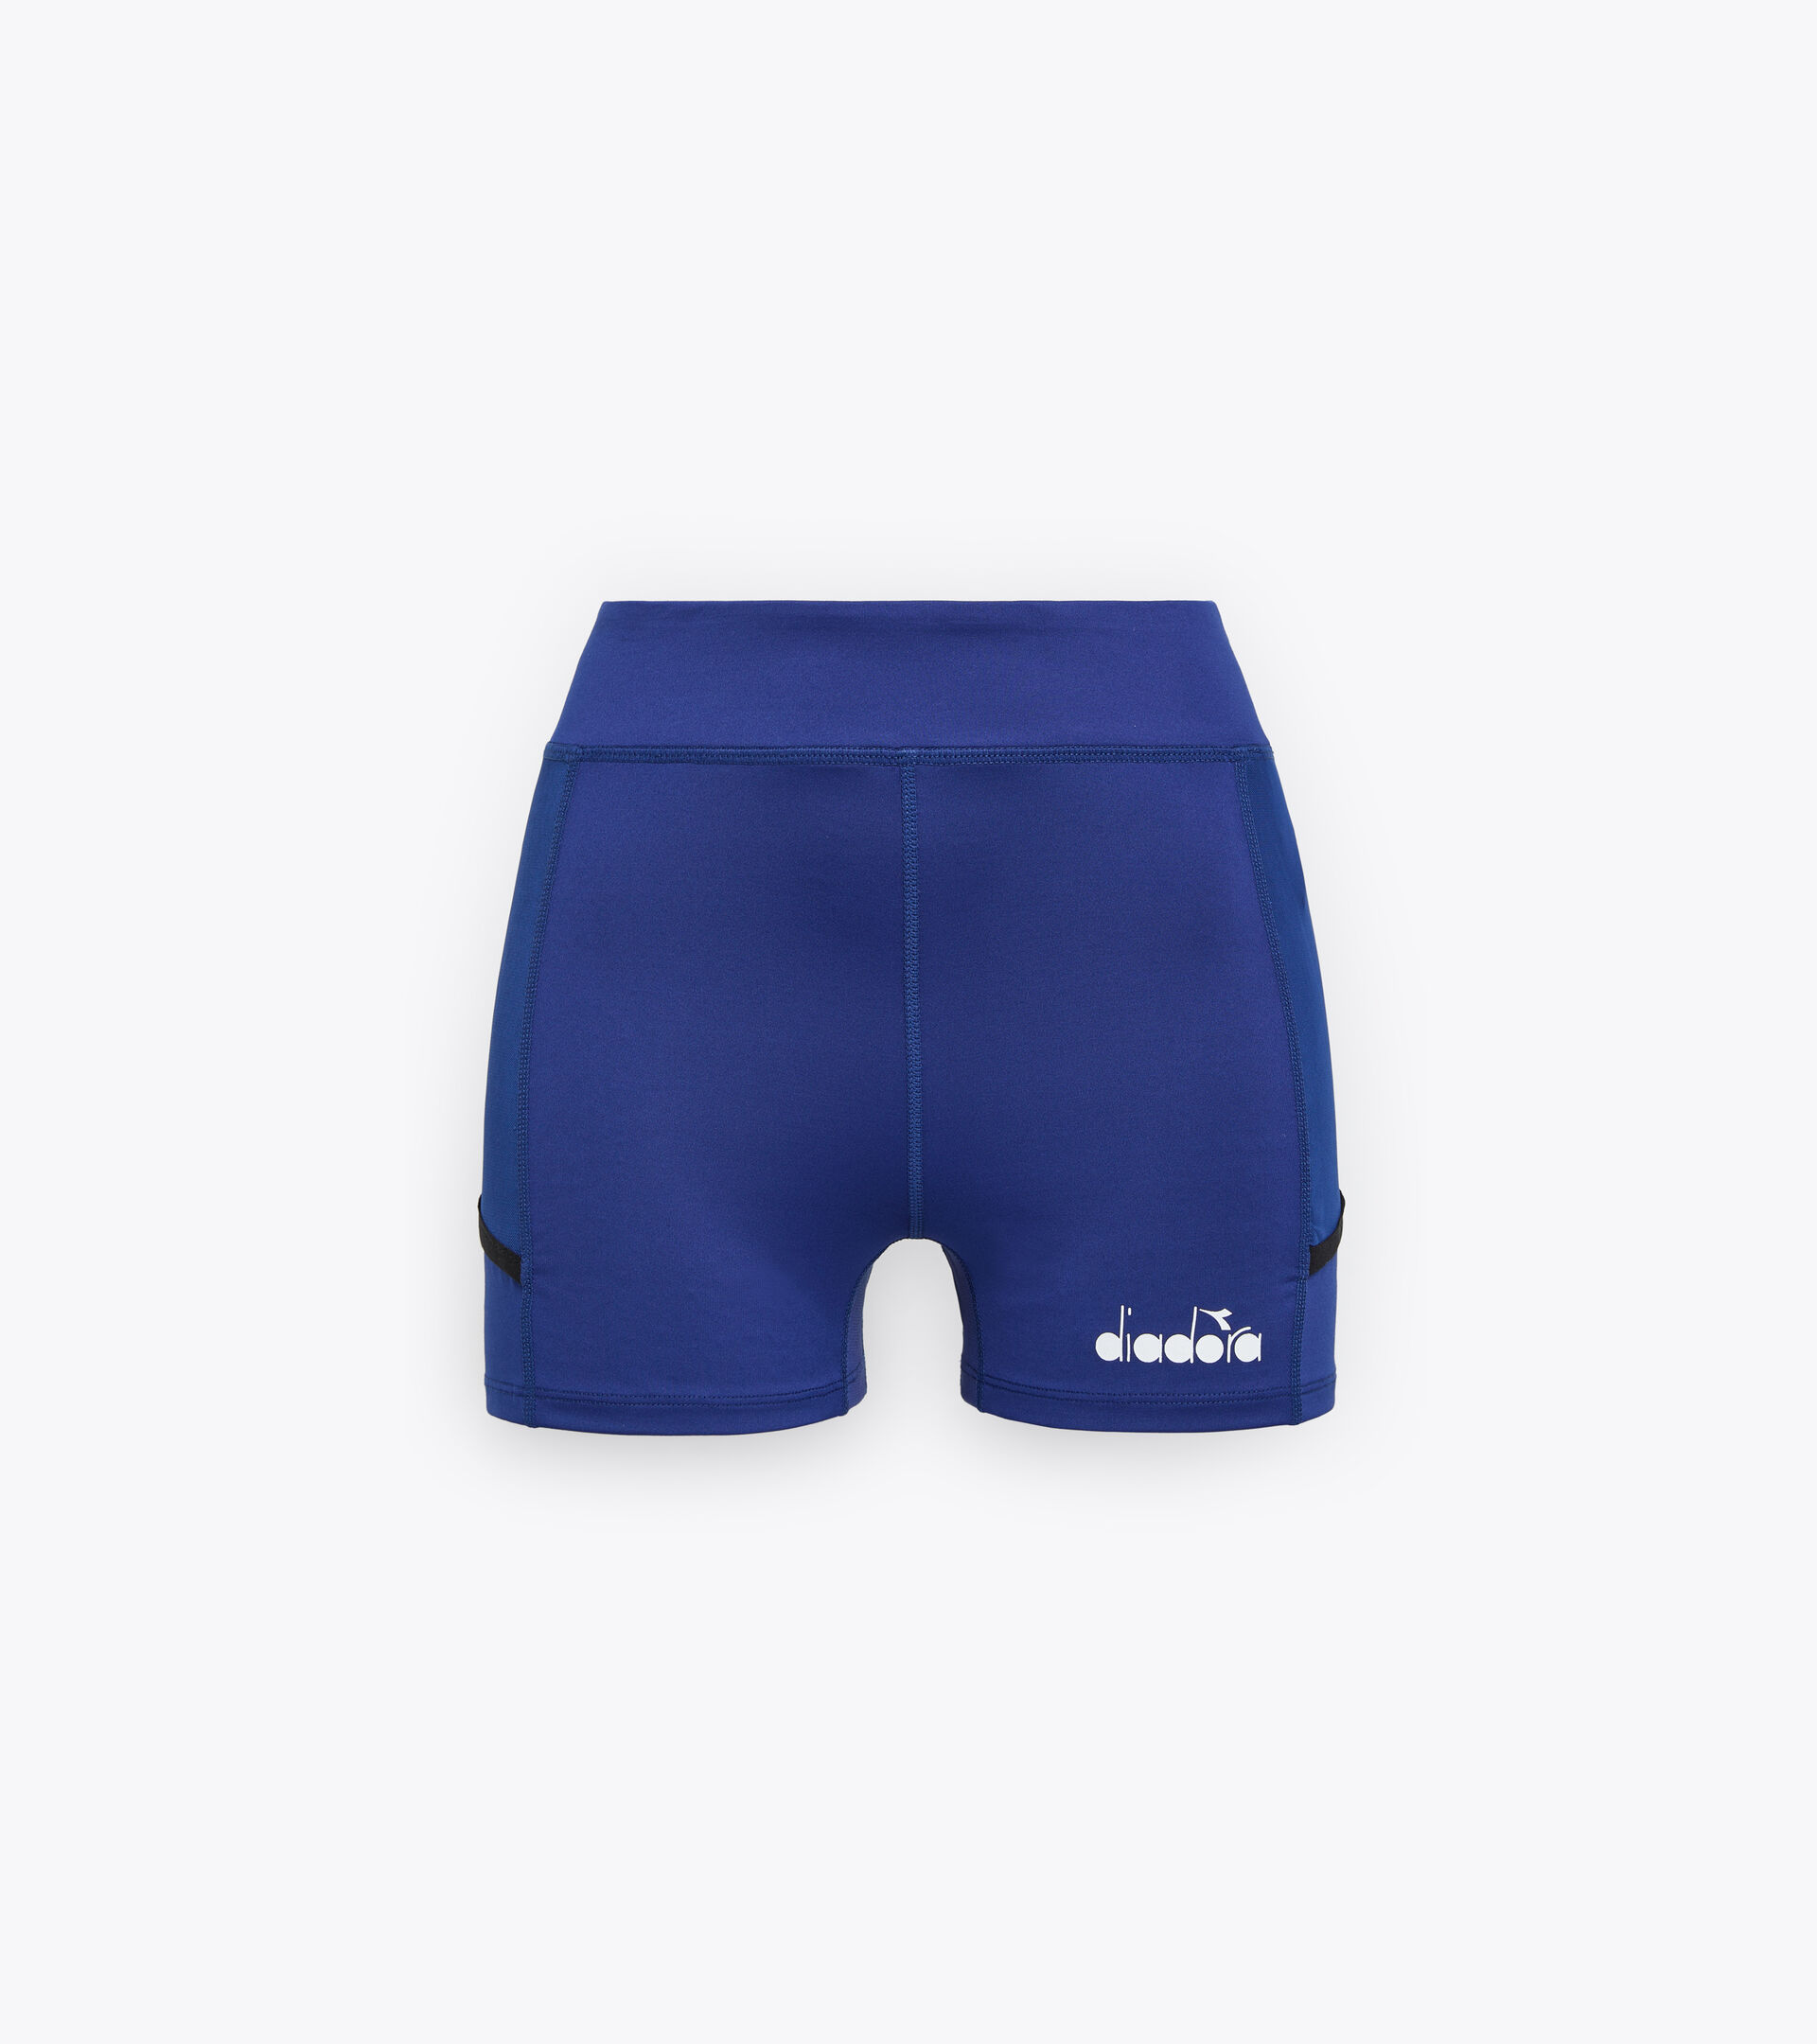 Tennis shorts - Women L. SHORT TIGHTS POCKET BLUE PRINT - Diadora